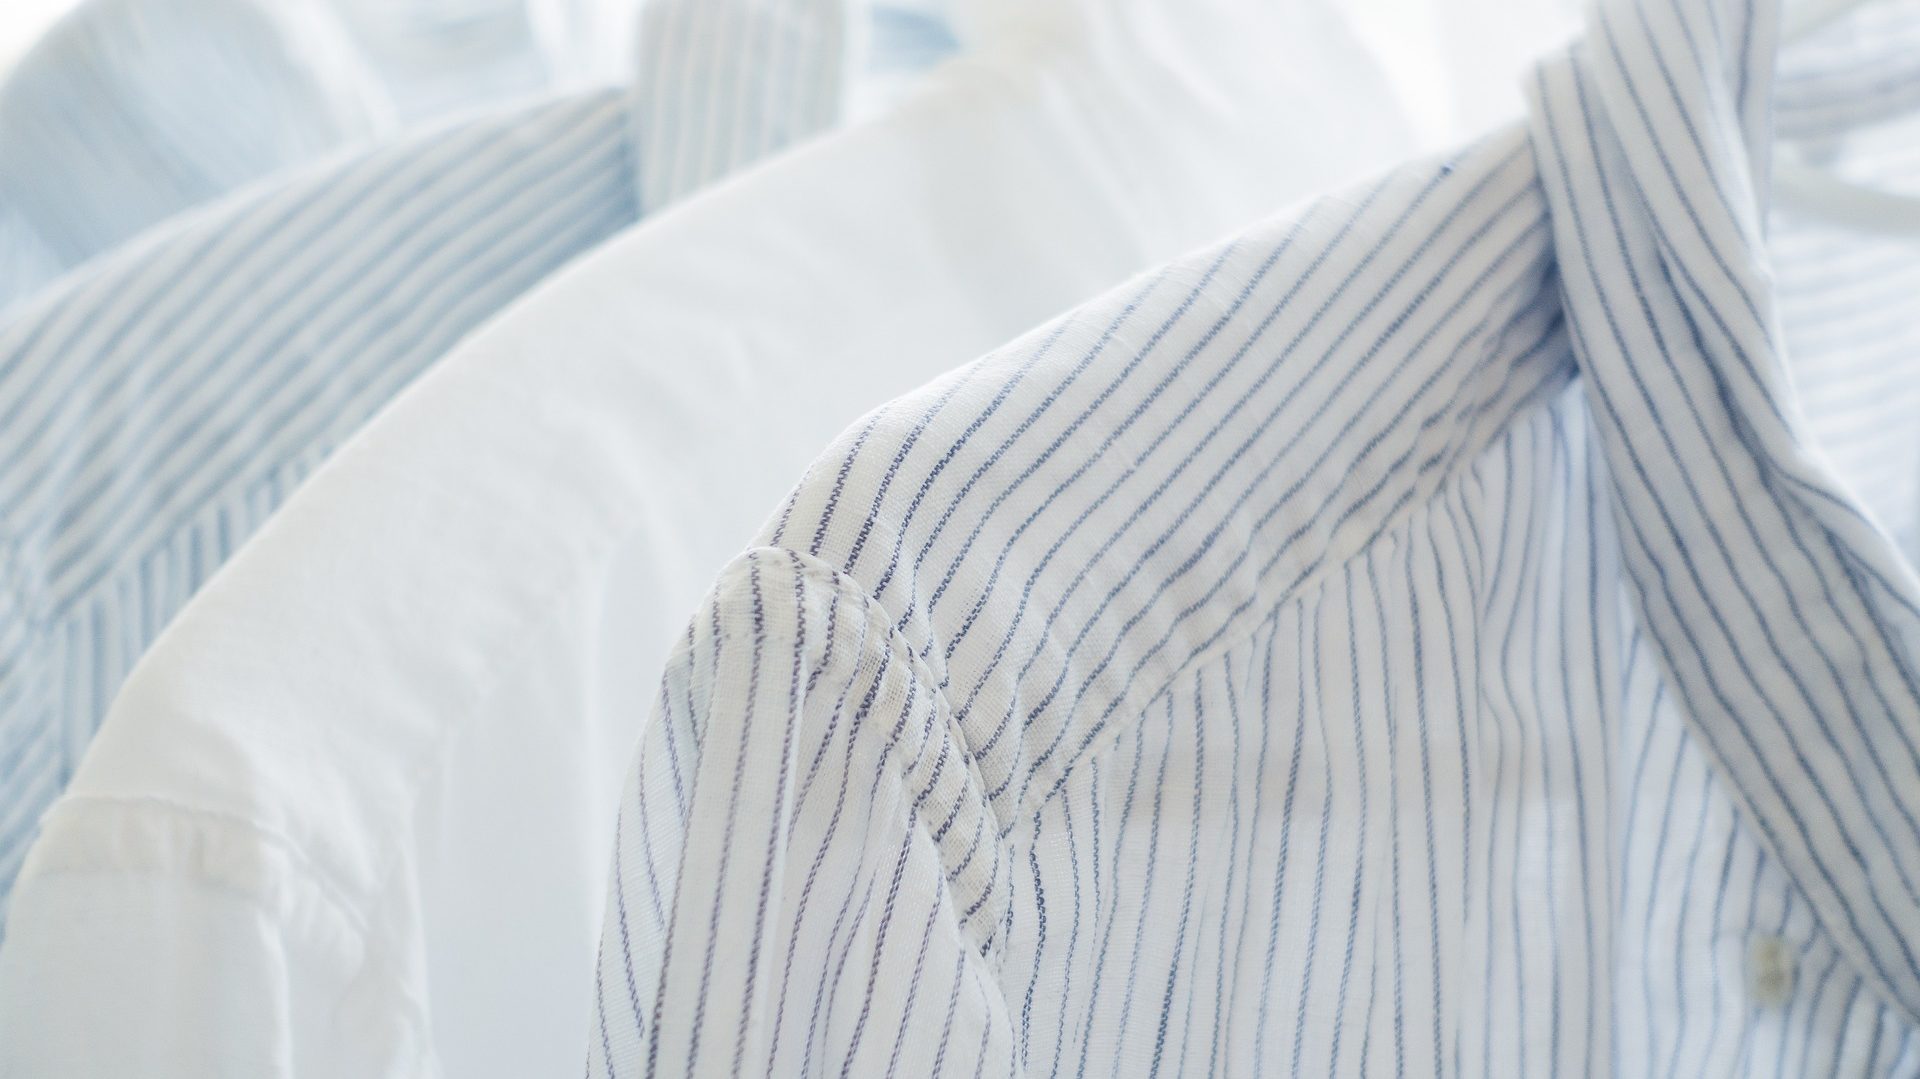 Hemden - Getreide statt Kunststoff für Kleidung